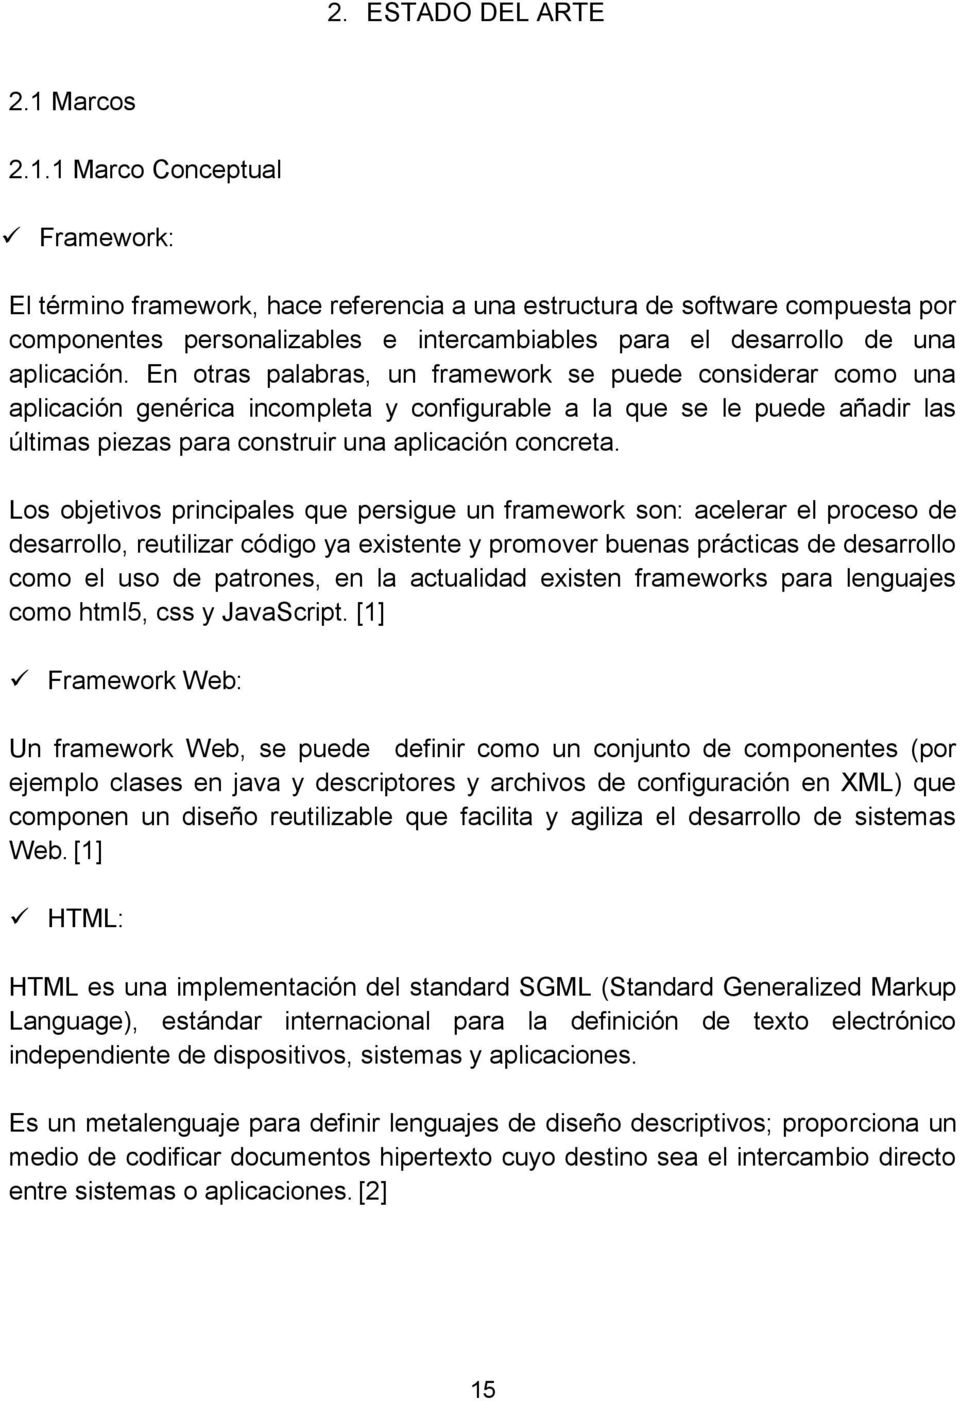 1 Marco Conceptual Framework: El término framework, hace referencia a una estructura de software compuesta por componentes personalizables e intercambiables para el desarrollo de una aplicación.